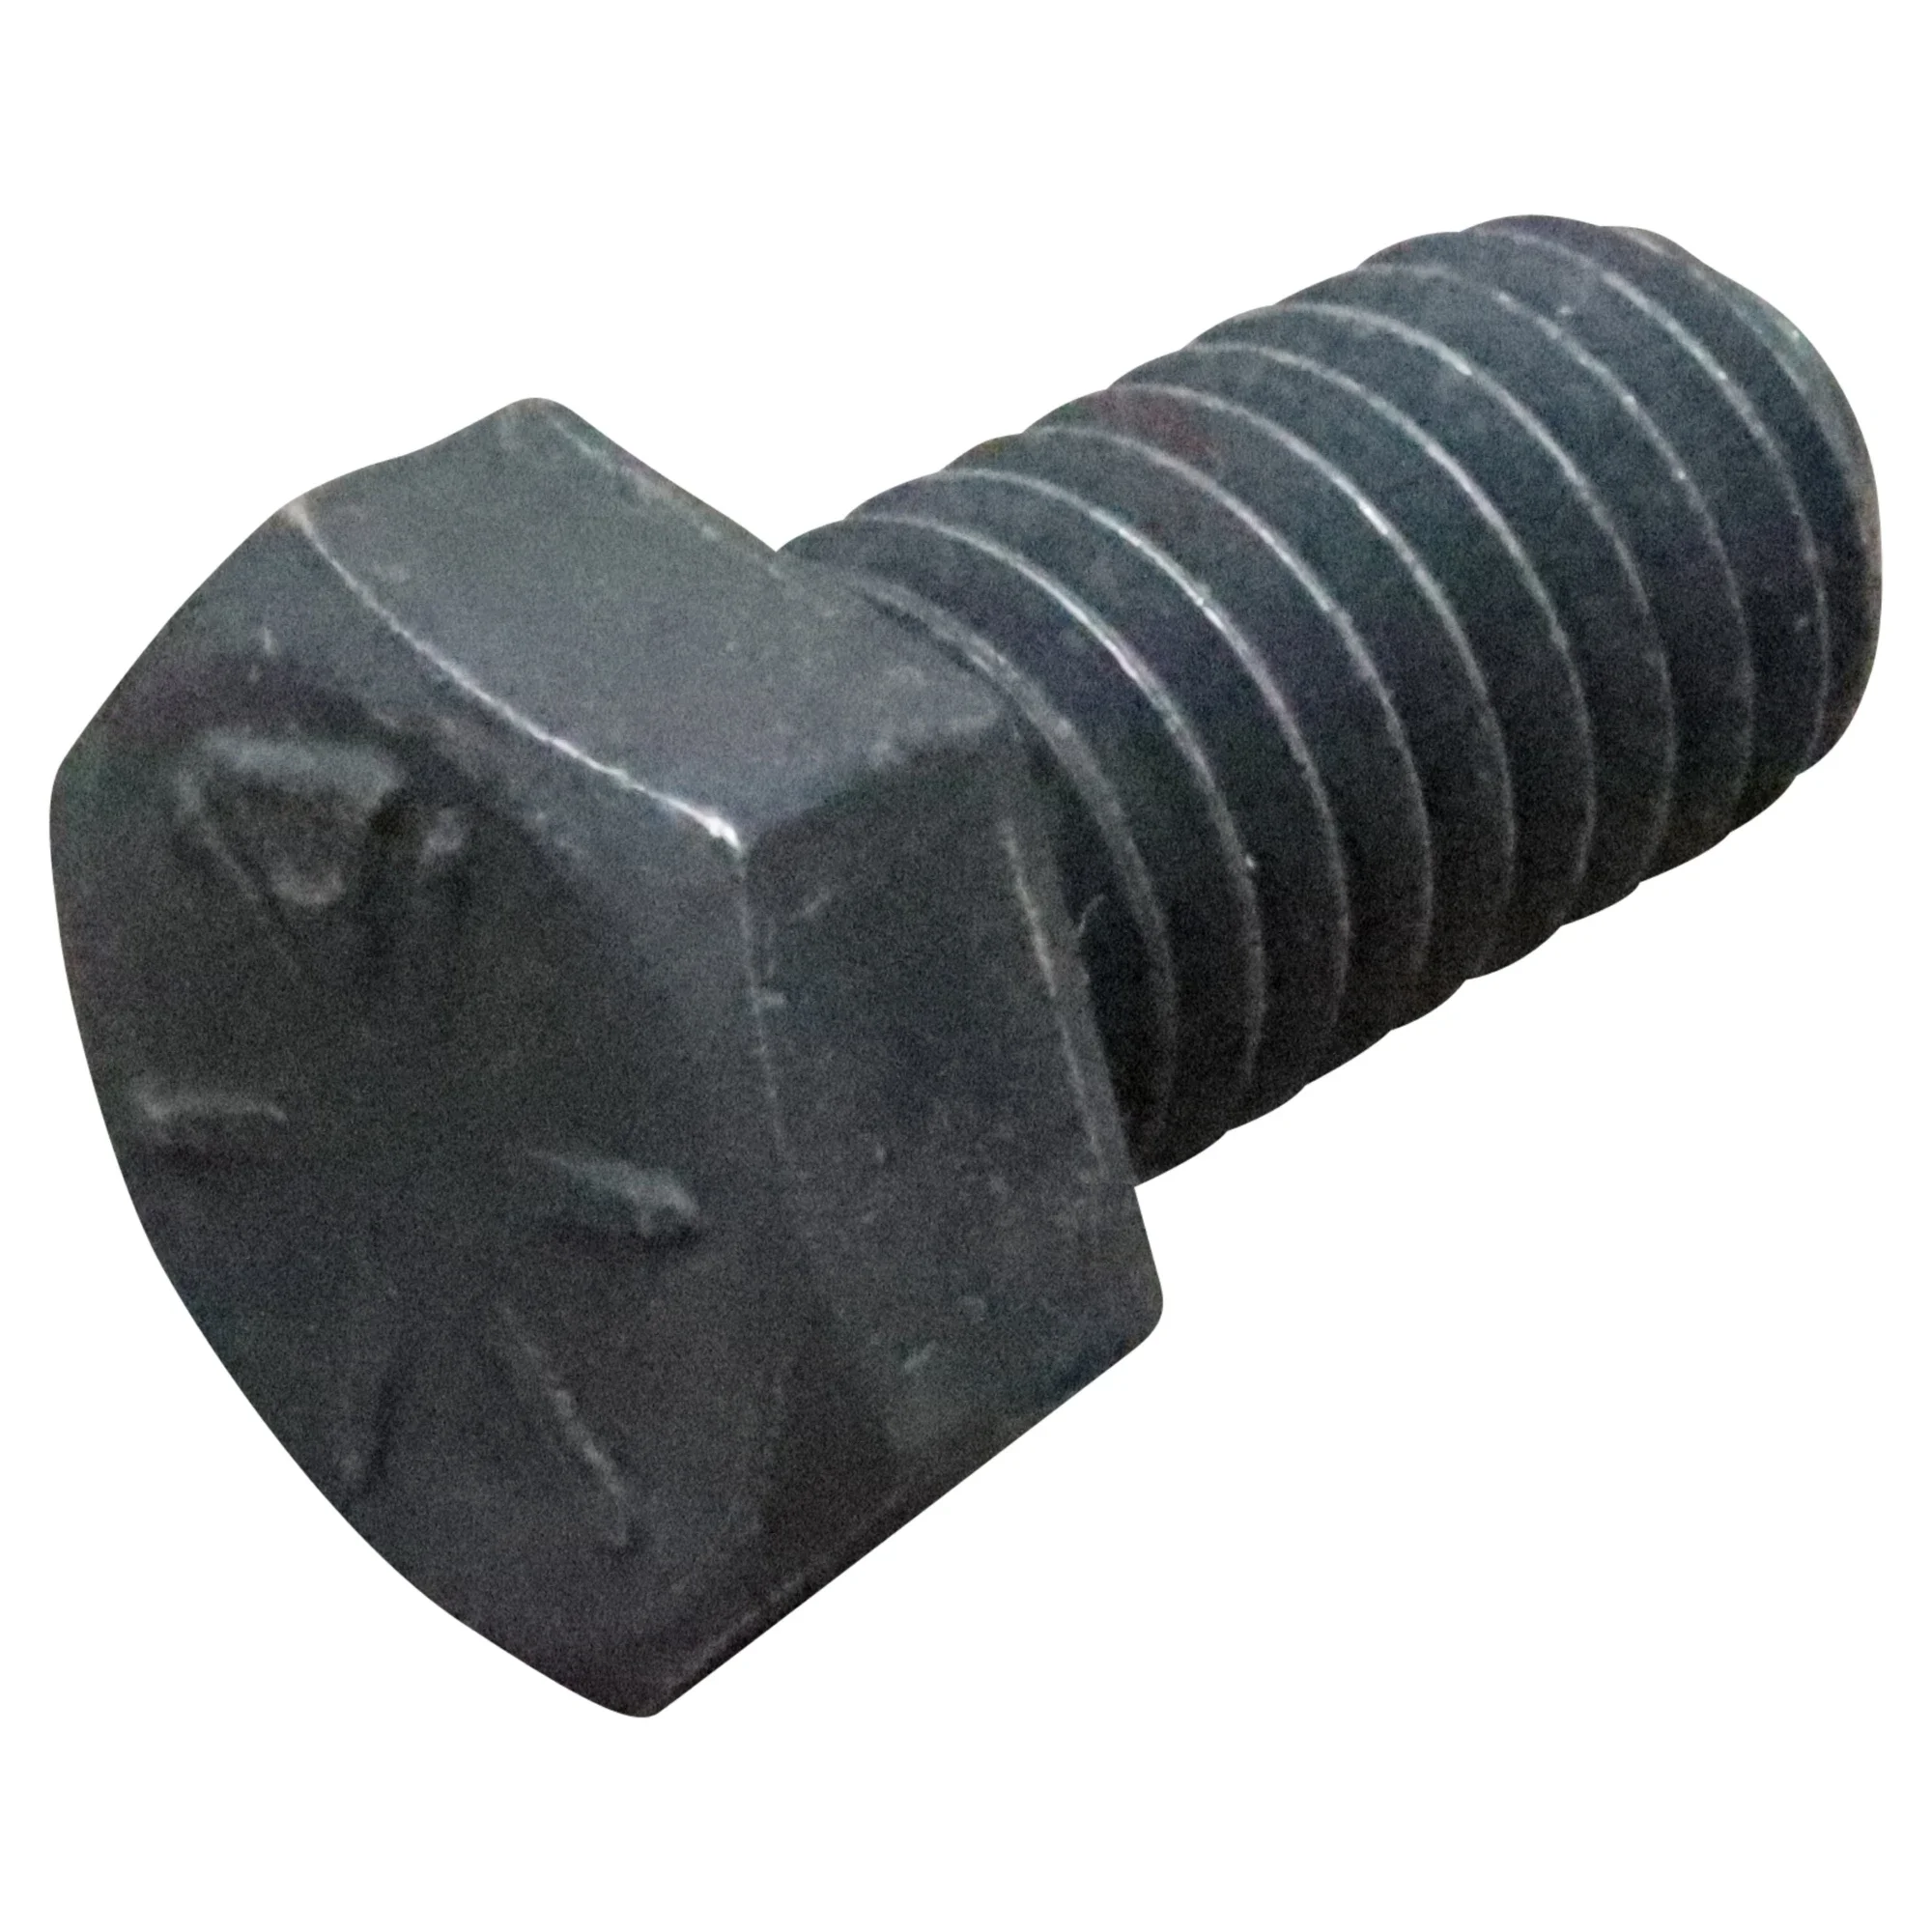 Wastebuilt® Replacement for Perkins Bolt Hex Head Cap Screw 3/8-16 X 3/4 Grade 8 Zinc